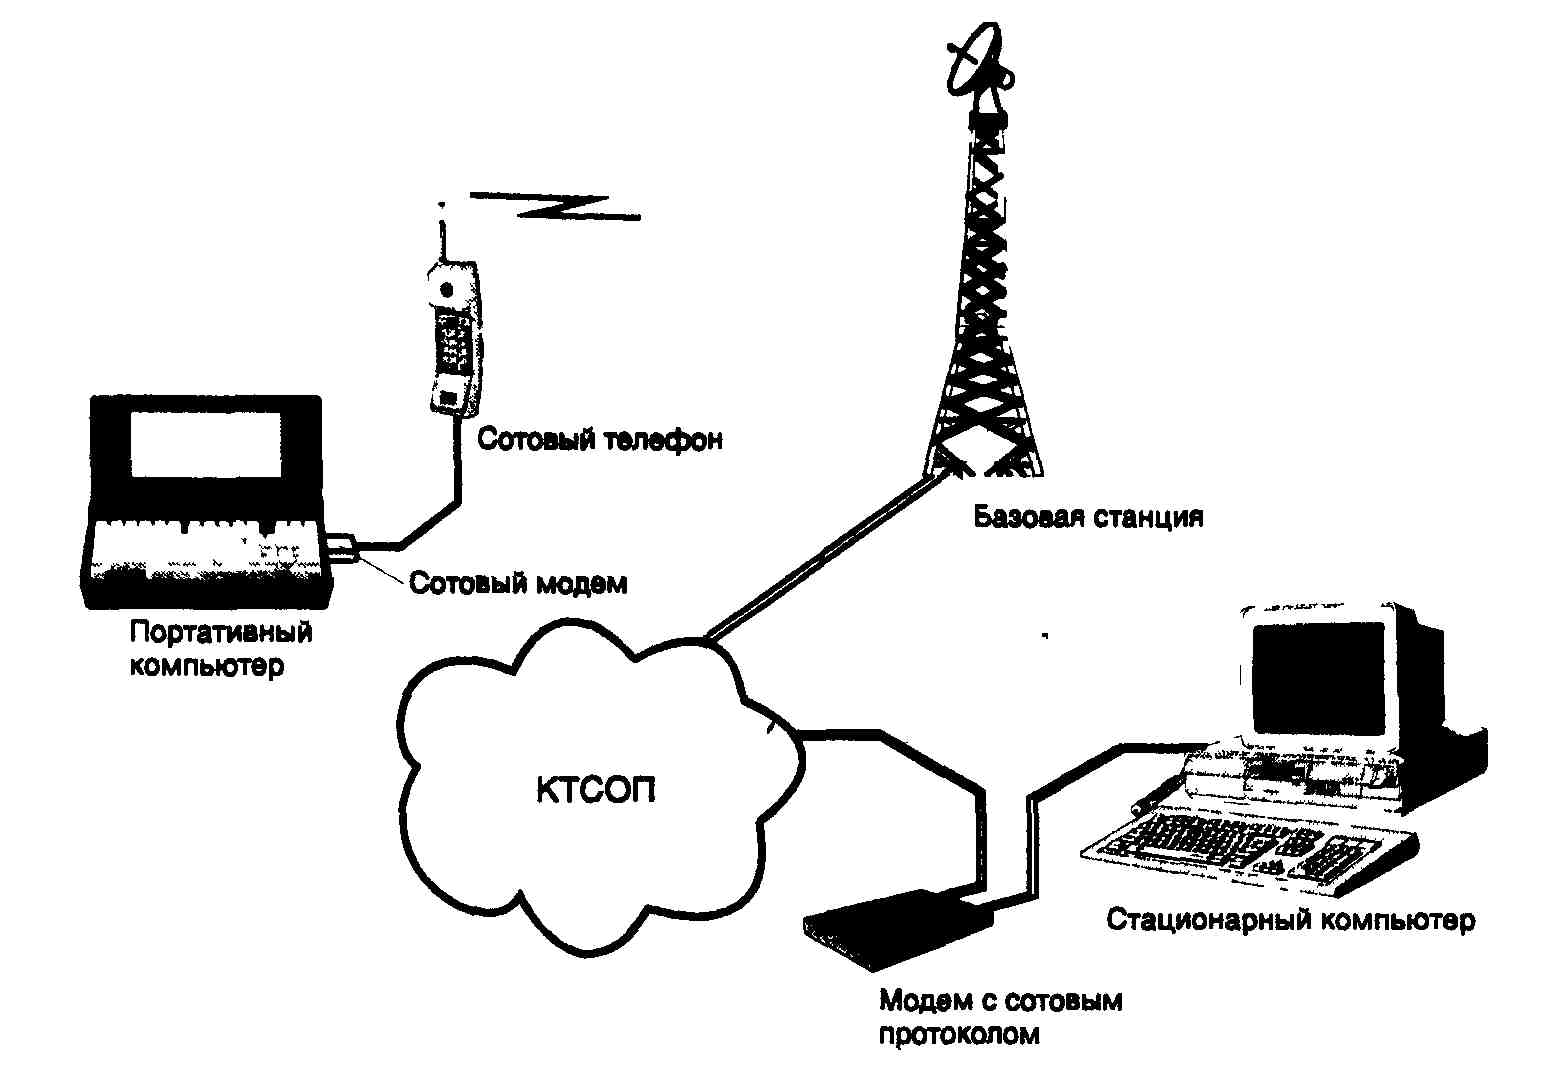 Сотовая связь передачи данных. Схема работы сотовой связи кратко. Схема сети сотовой связи. Схема передачи сигнала через GSM модем. Принцип работы мобильной связи схема.